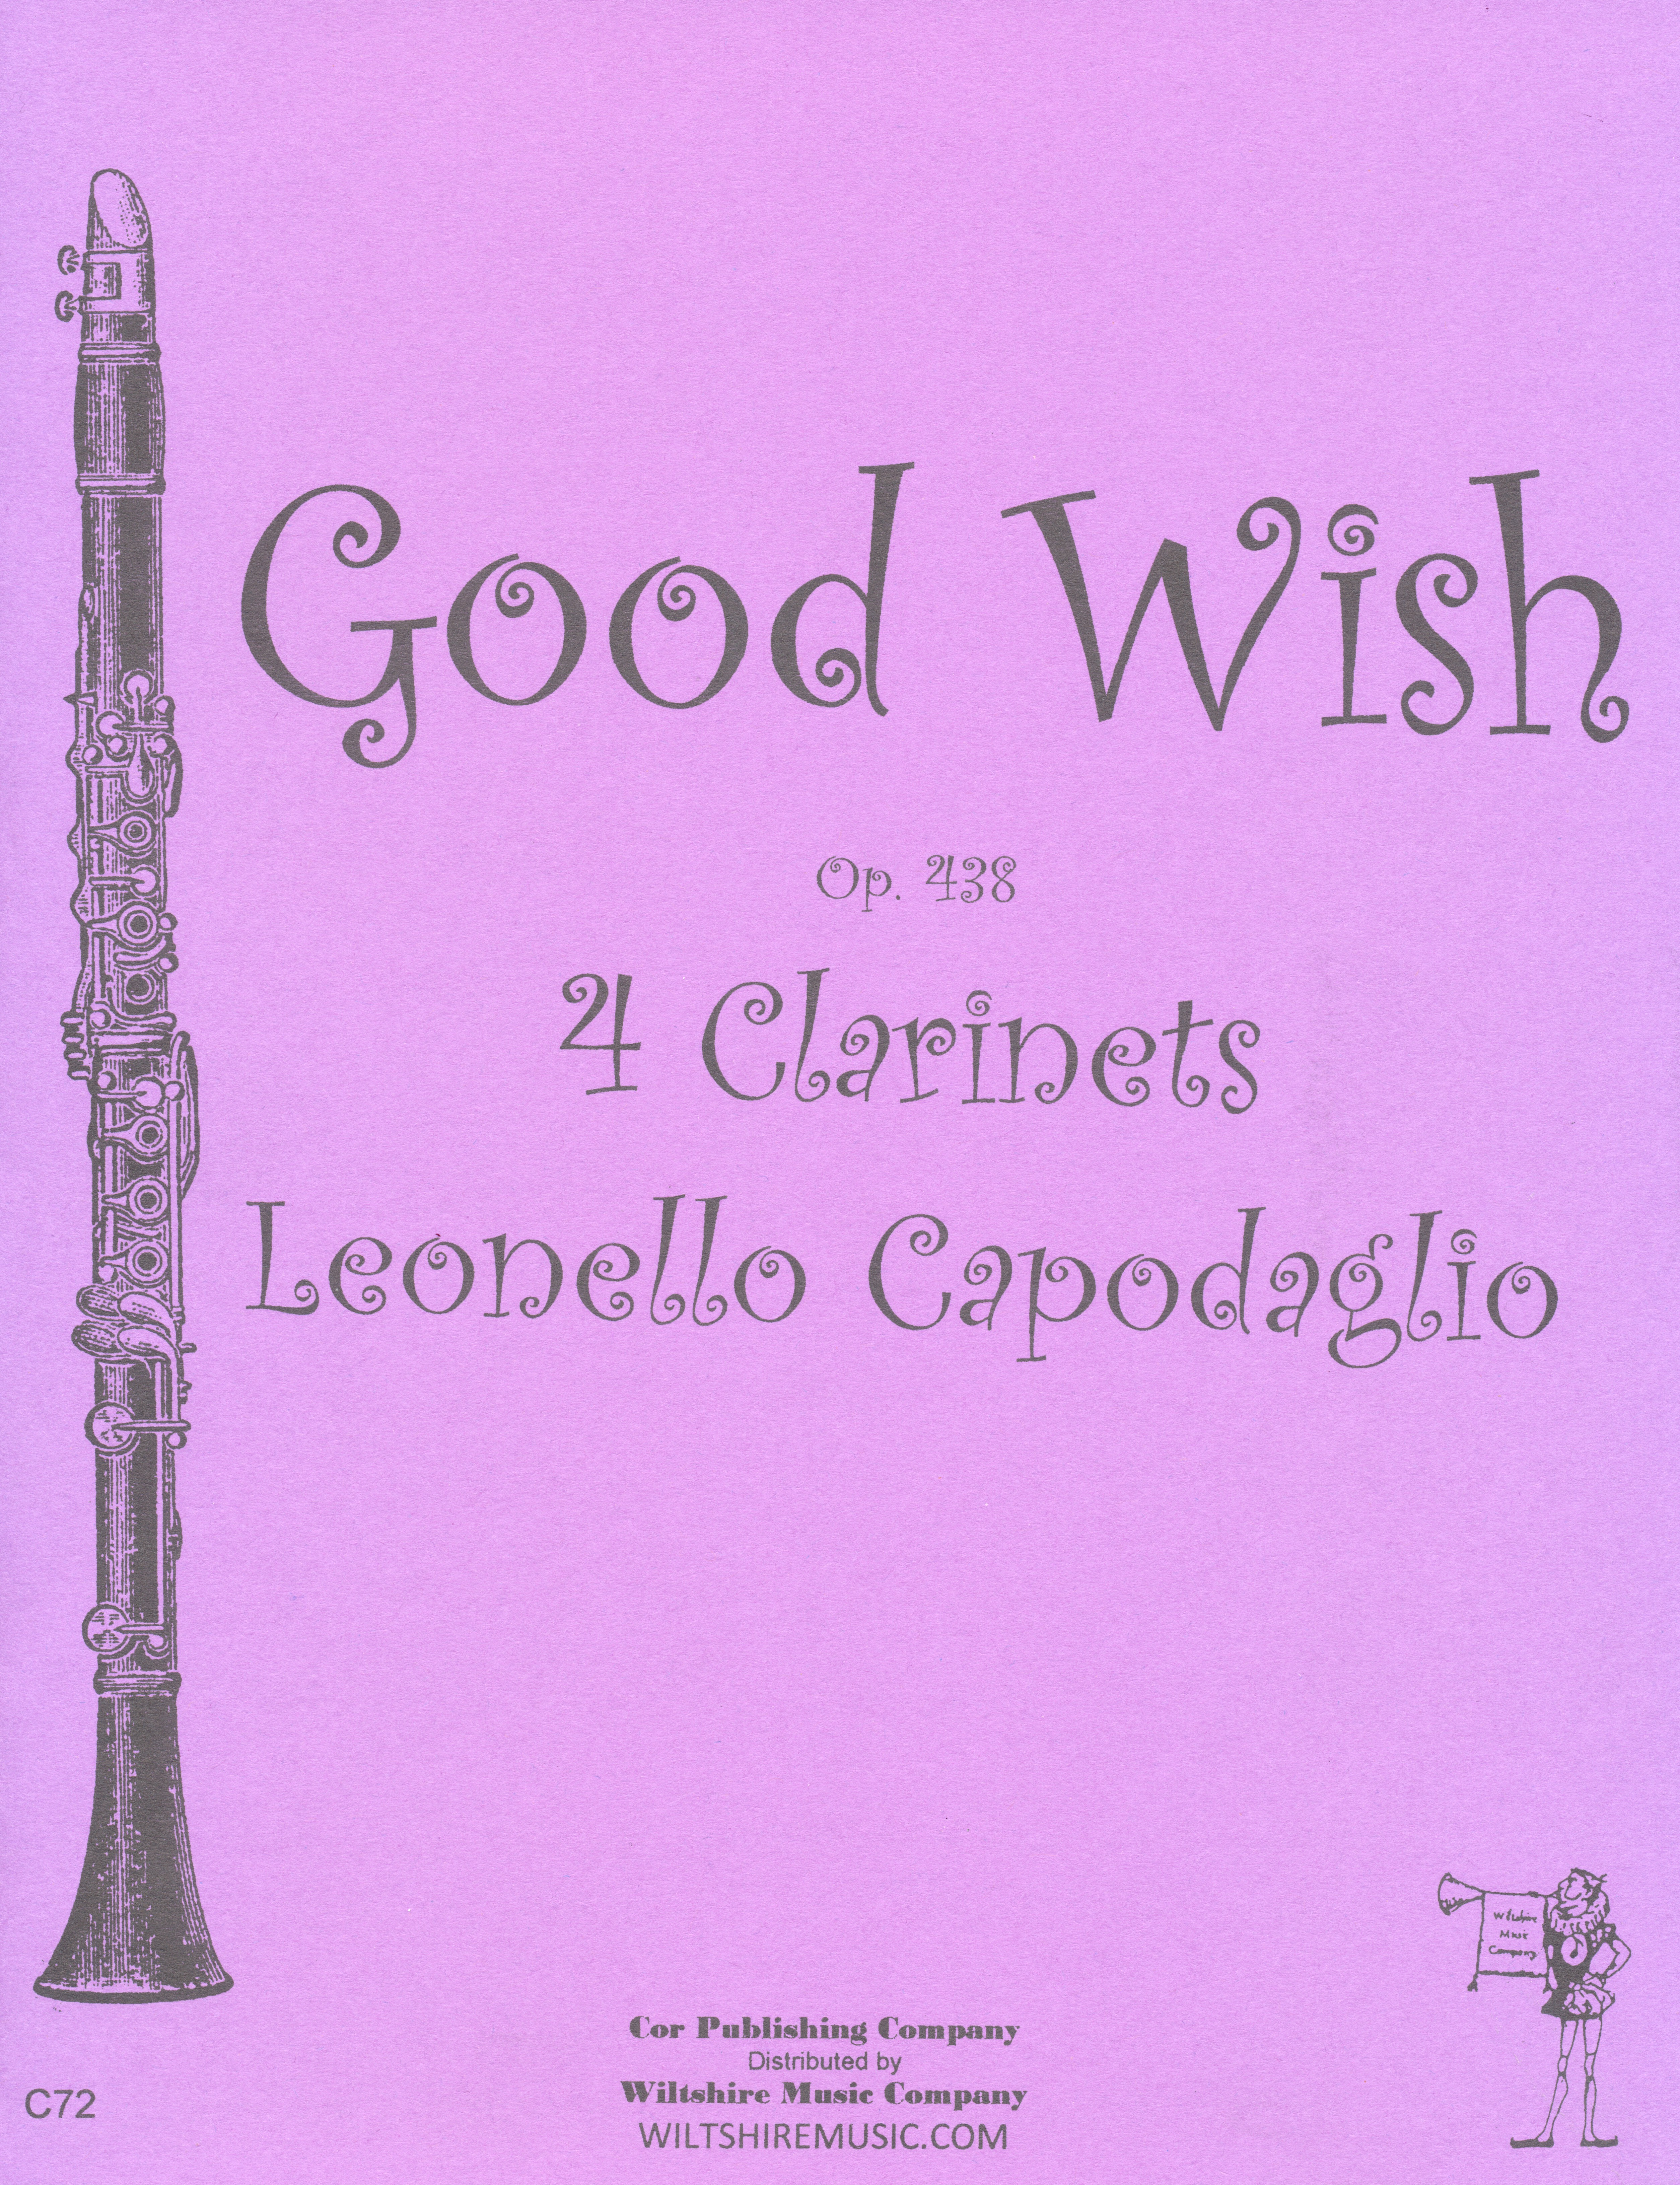 Good Wish, Leonello Capodaglio,  4 clarinets